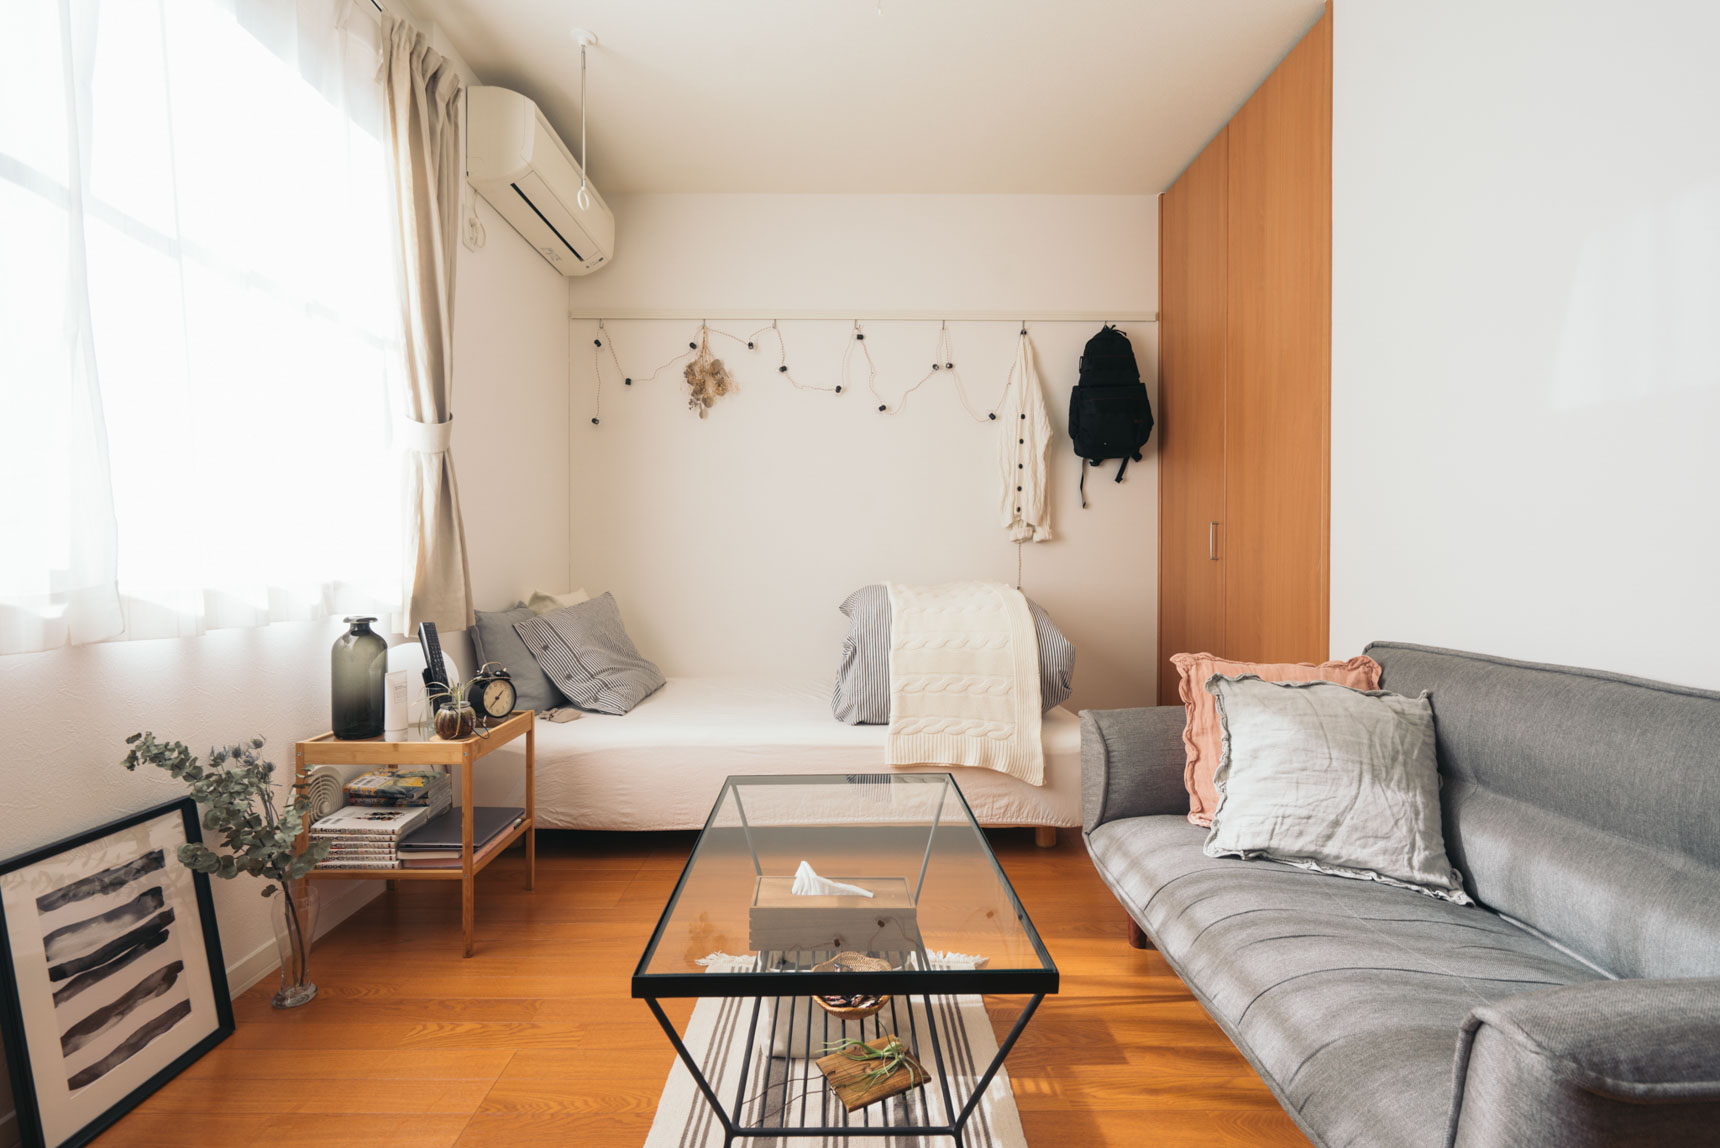 naa9290さんが暮らすのは、22平米の1Kマンション。6.5畳でベッドとソファの両方をおいて、しかもこんなにスペースにゆとりがあるのはすごい！